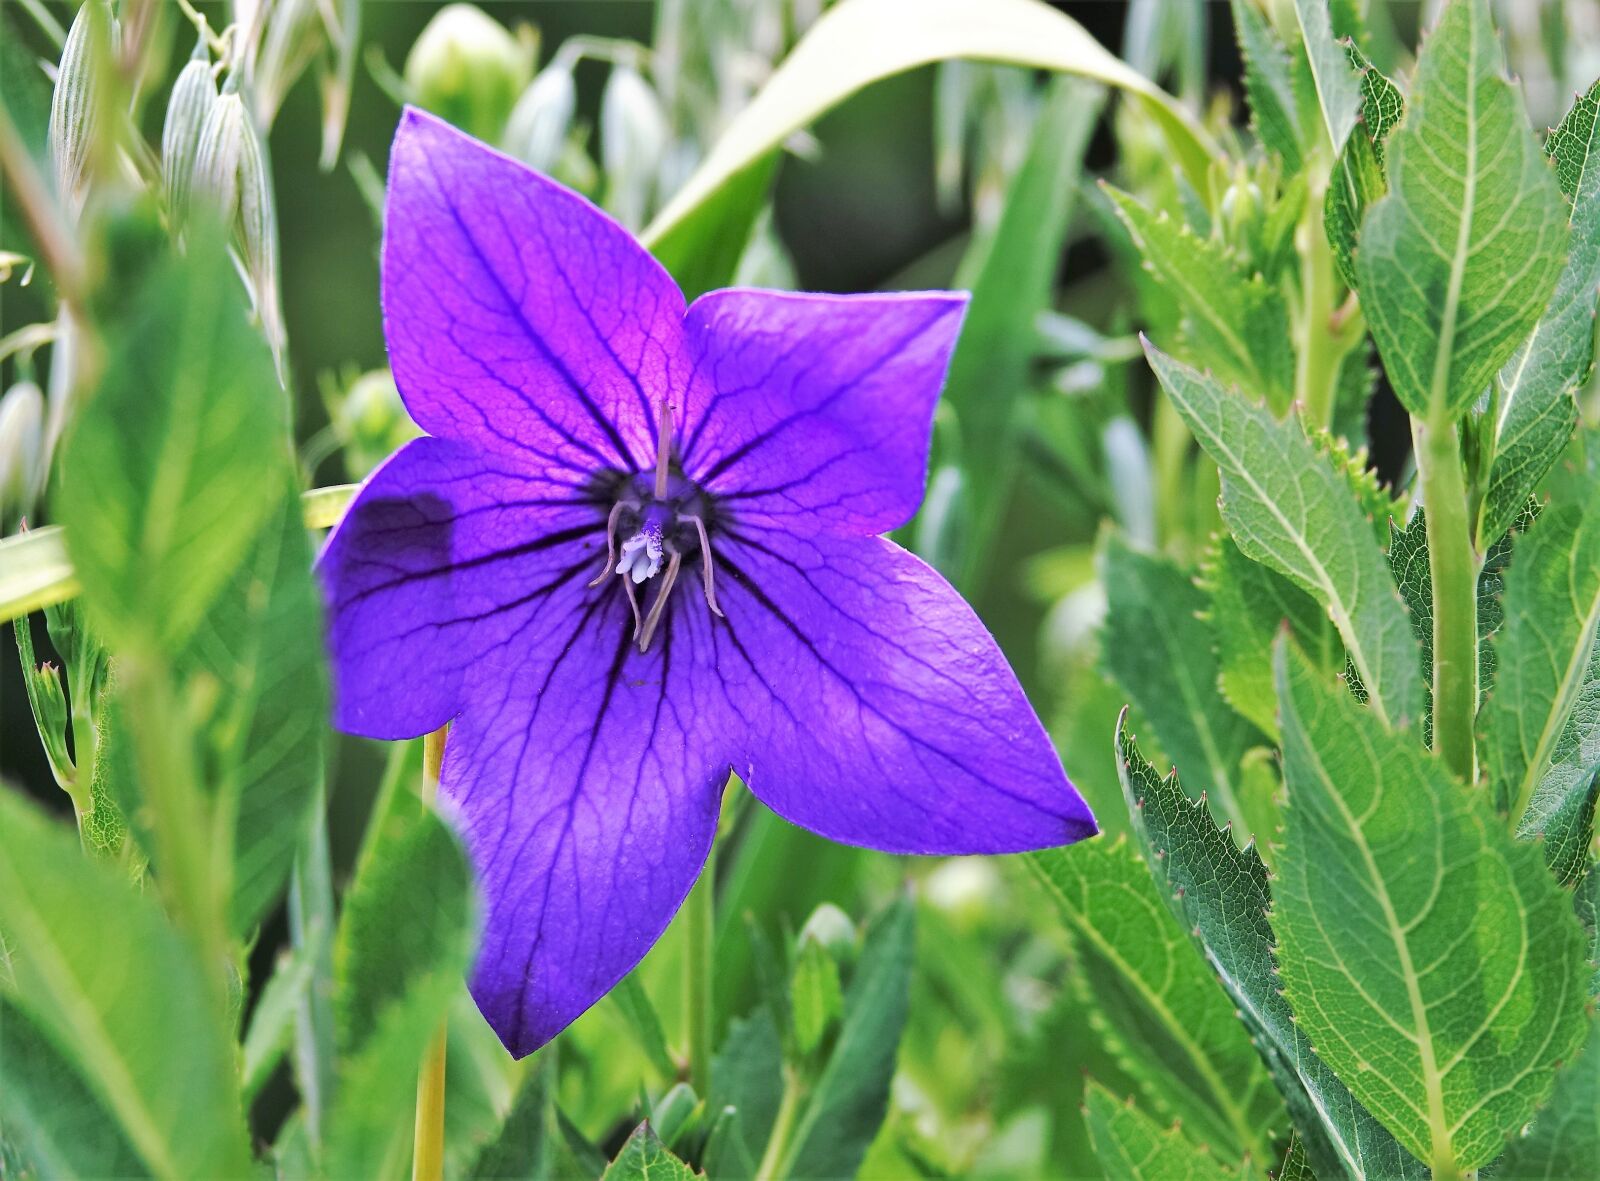 Sony Cyber-shot DSC-RX10 III sample photo. Flower, balcony flower, purple photography